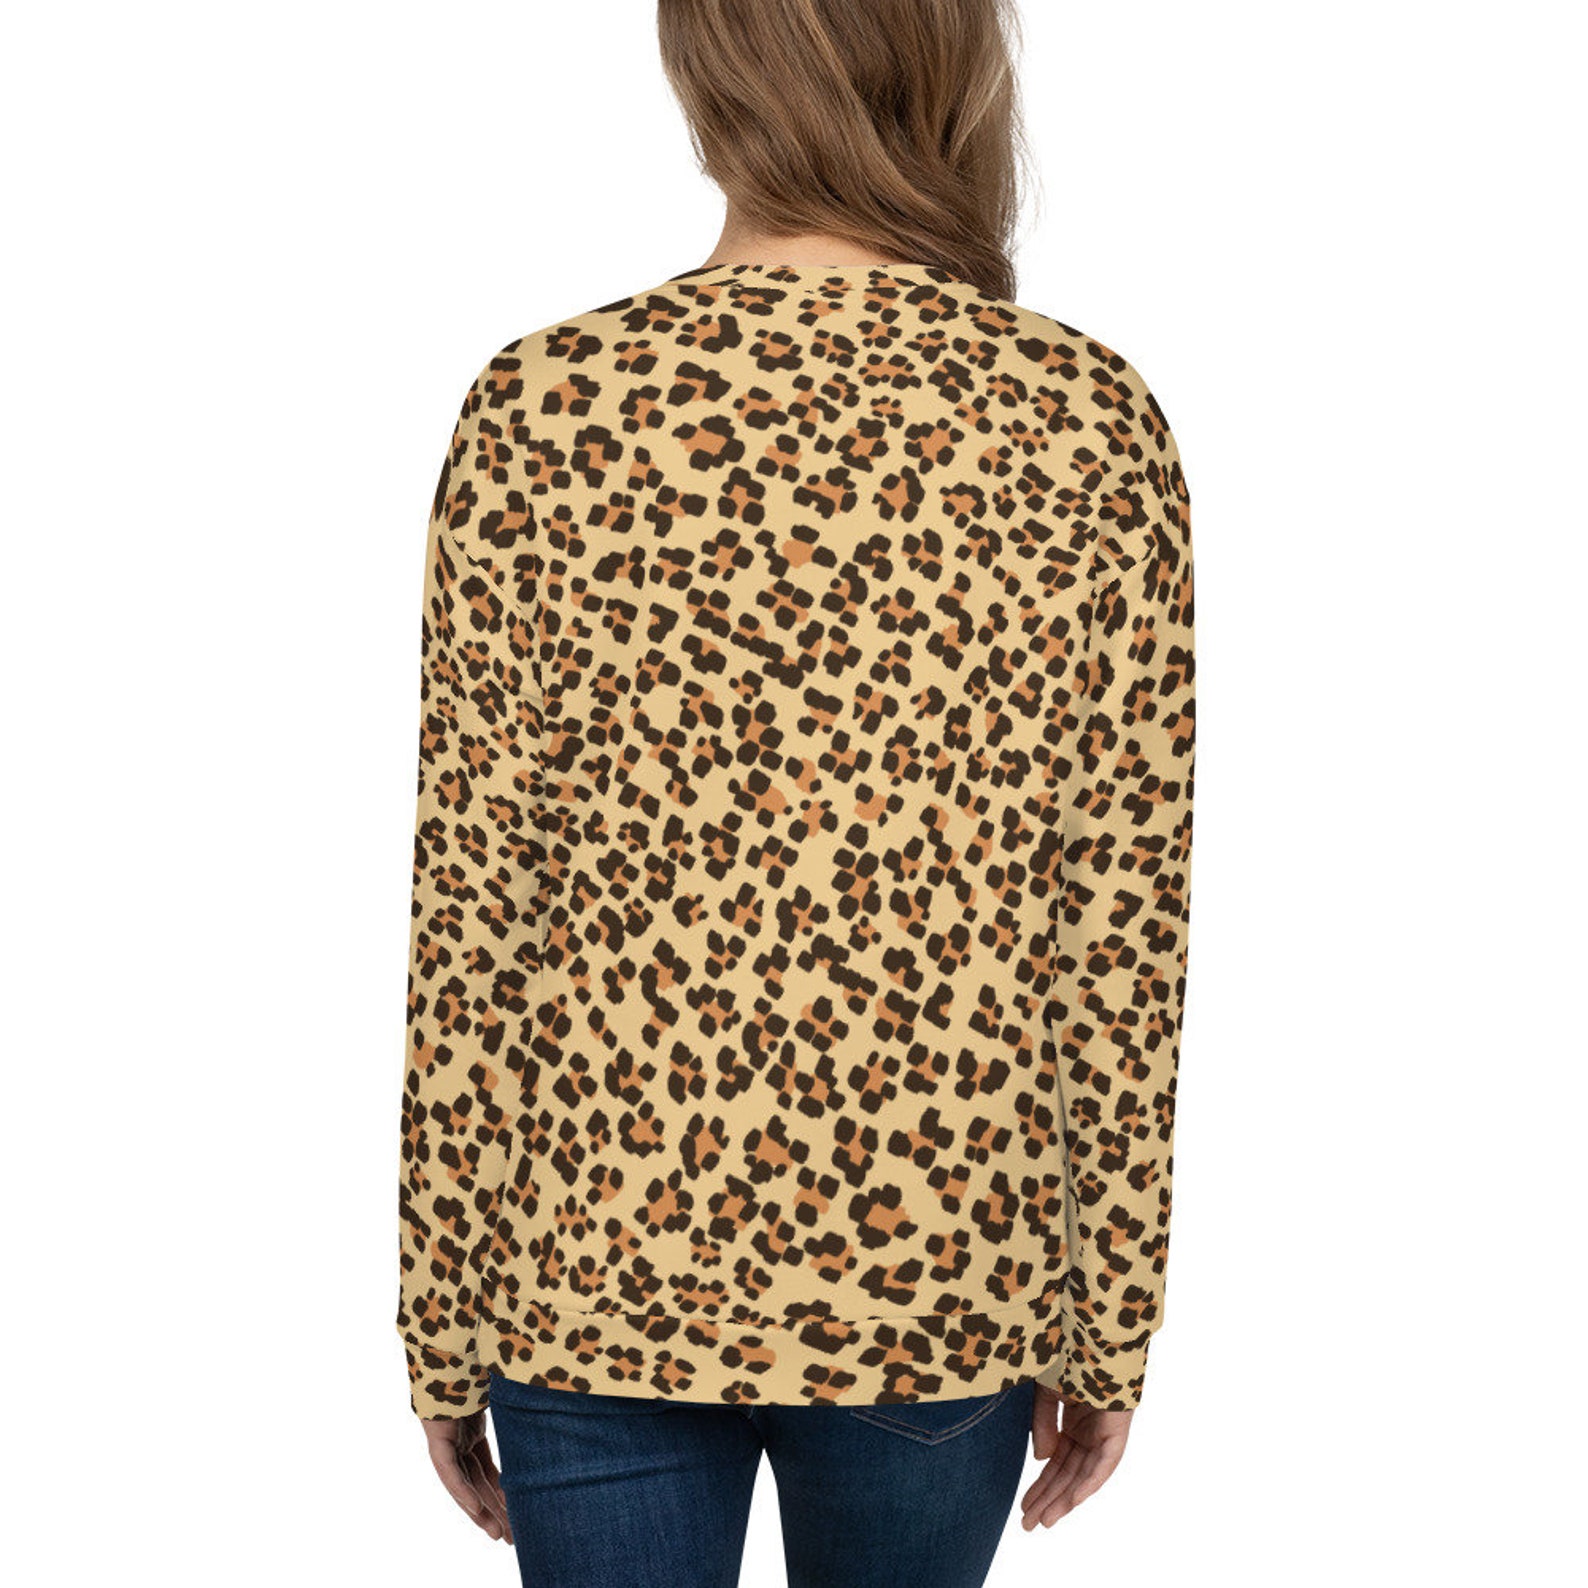 Leopard Woman Sweatshirt Sweatshirt to set Sport Sweatshirt | Etsy